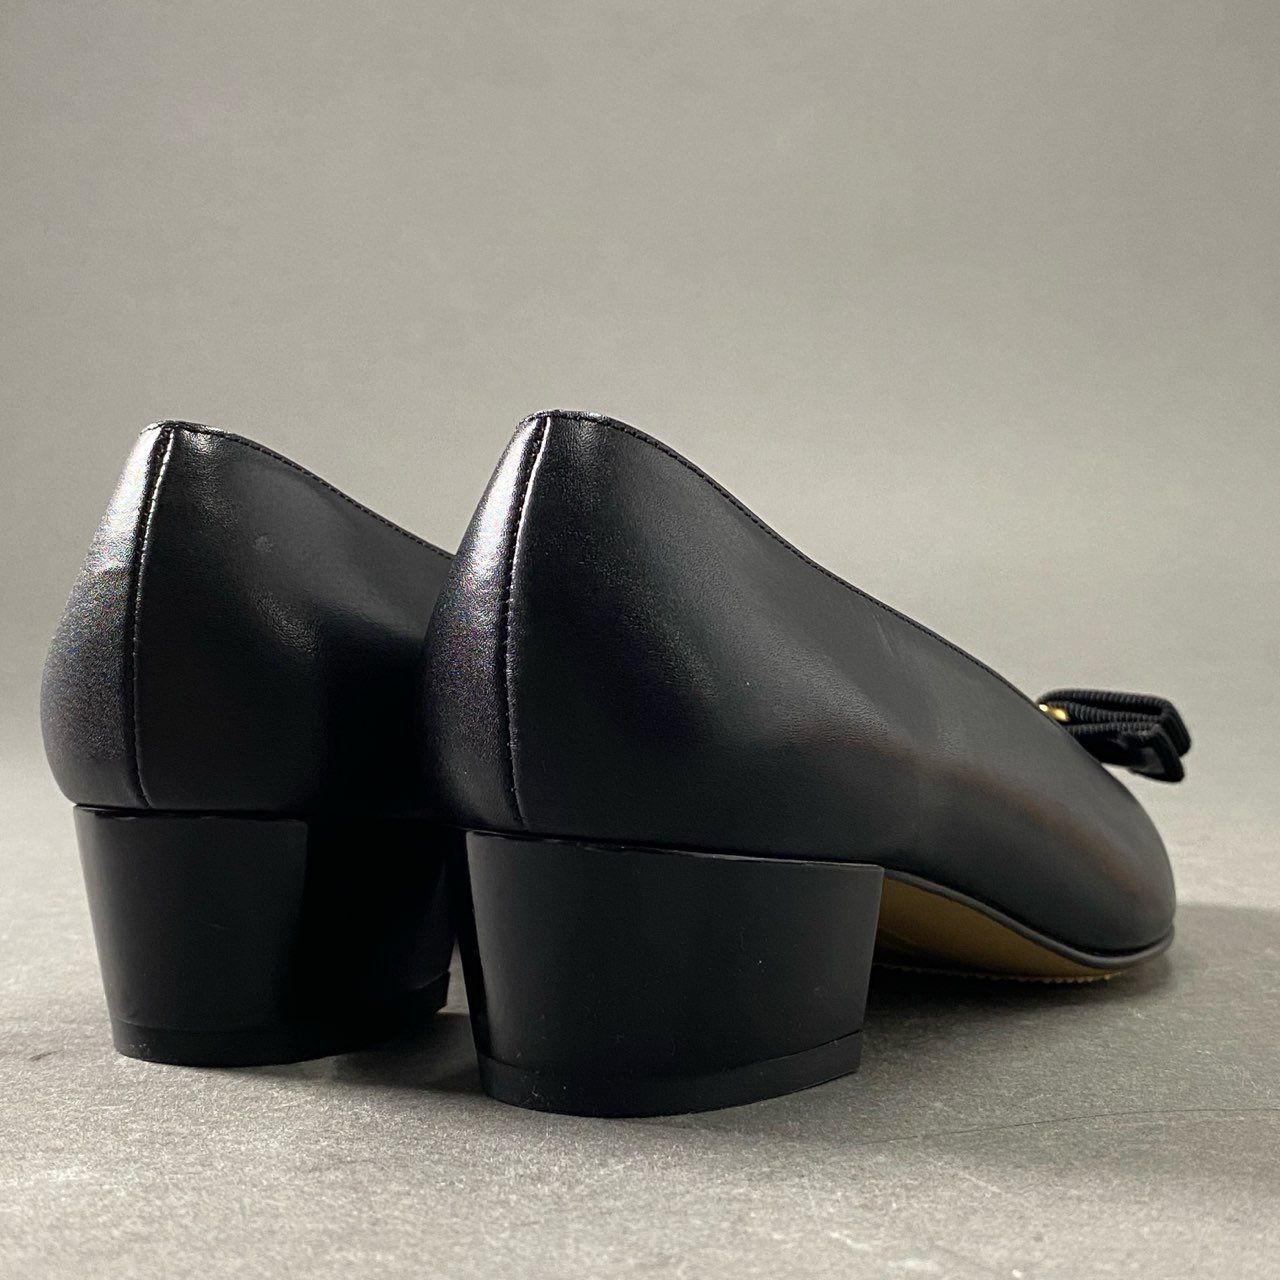 1f11 Salvatore Ferragamo サルヴァトーレフェラガモ ヴァラリボン スムースレザー パンプス レザーパンプス サイズ5D  ブラック レディース 女性用 靴 - メルカリ